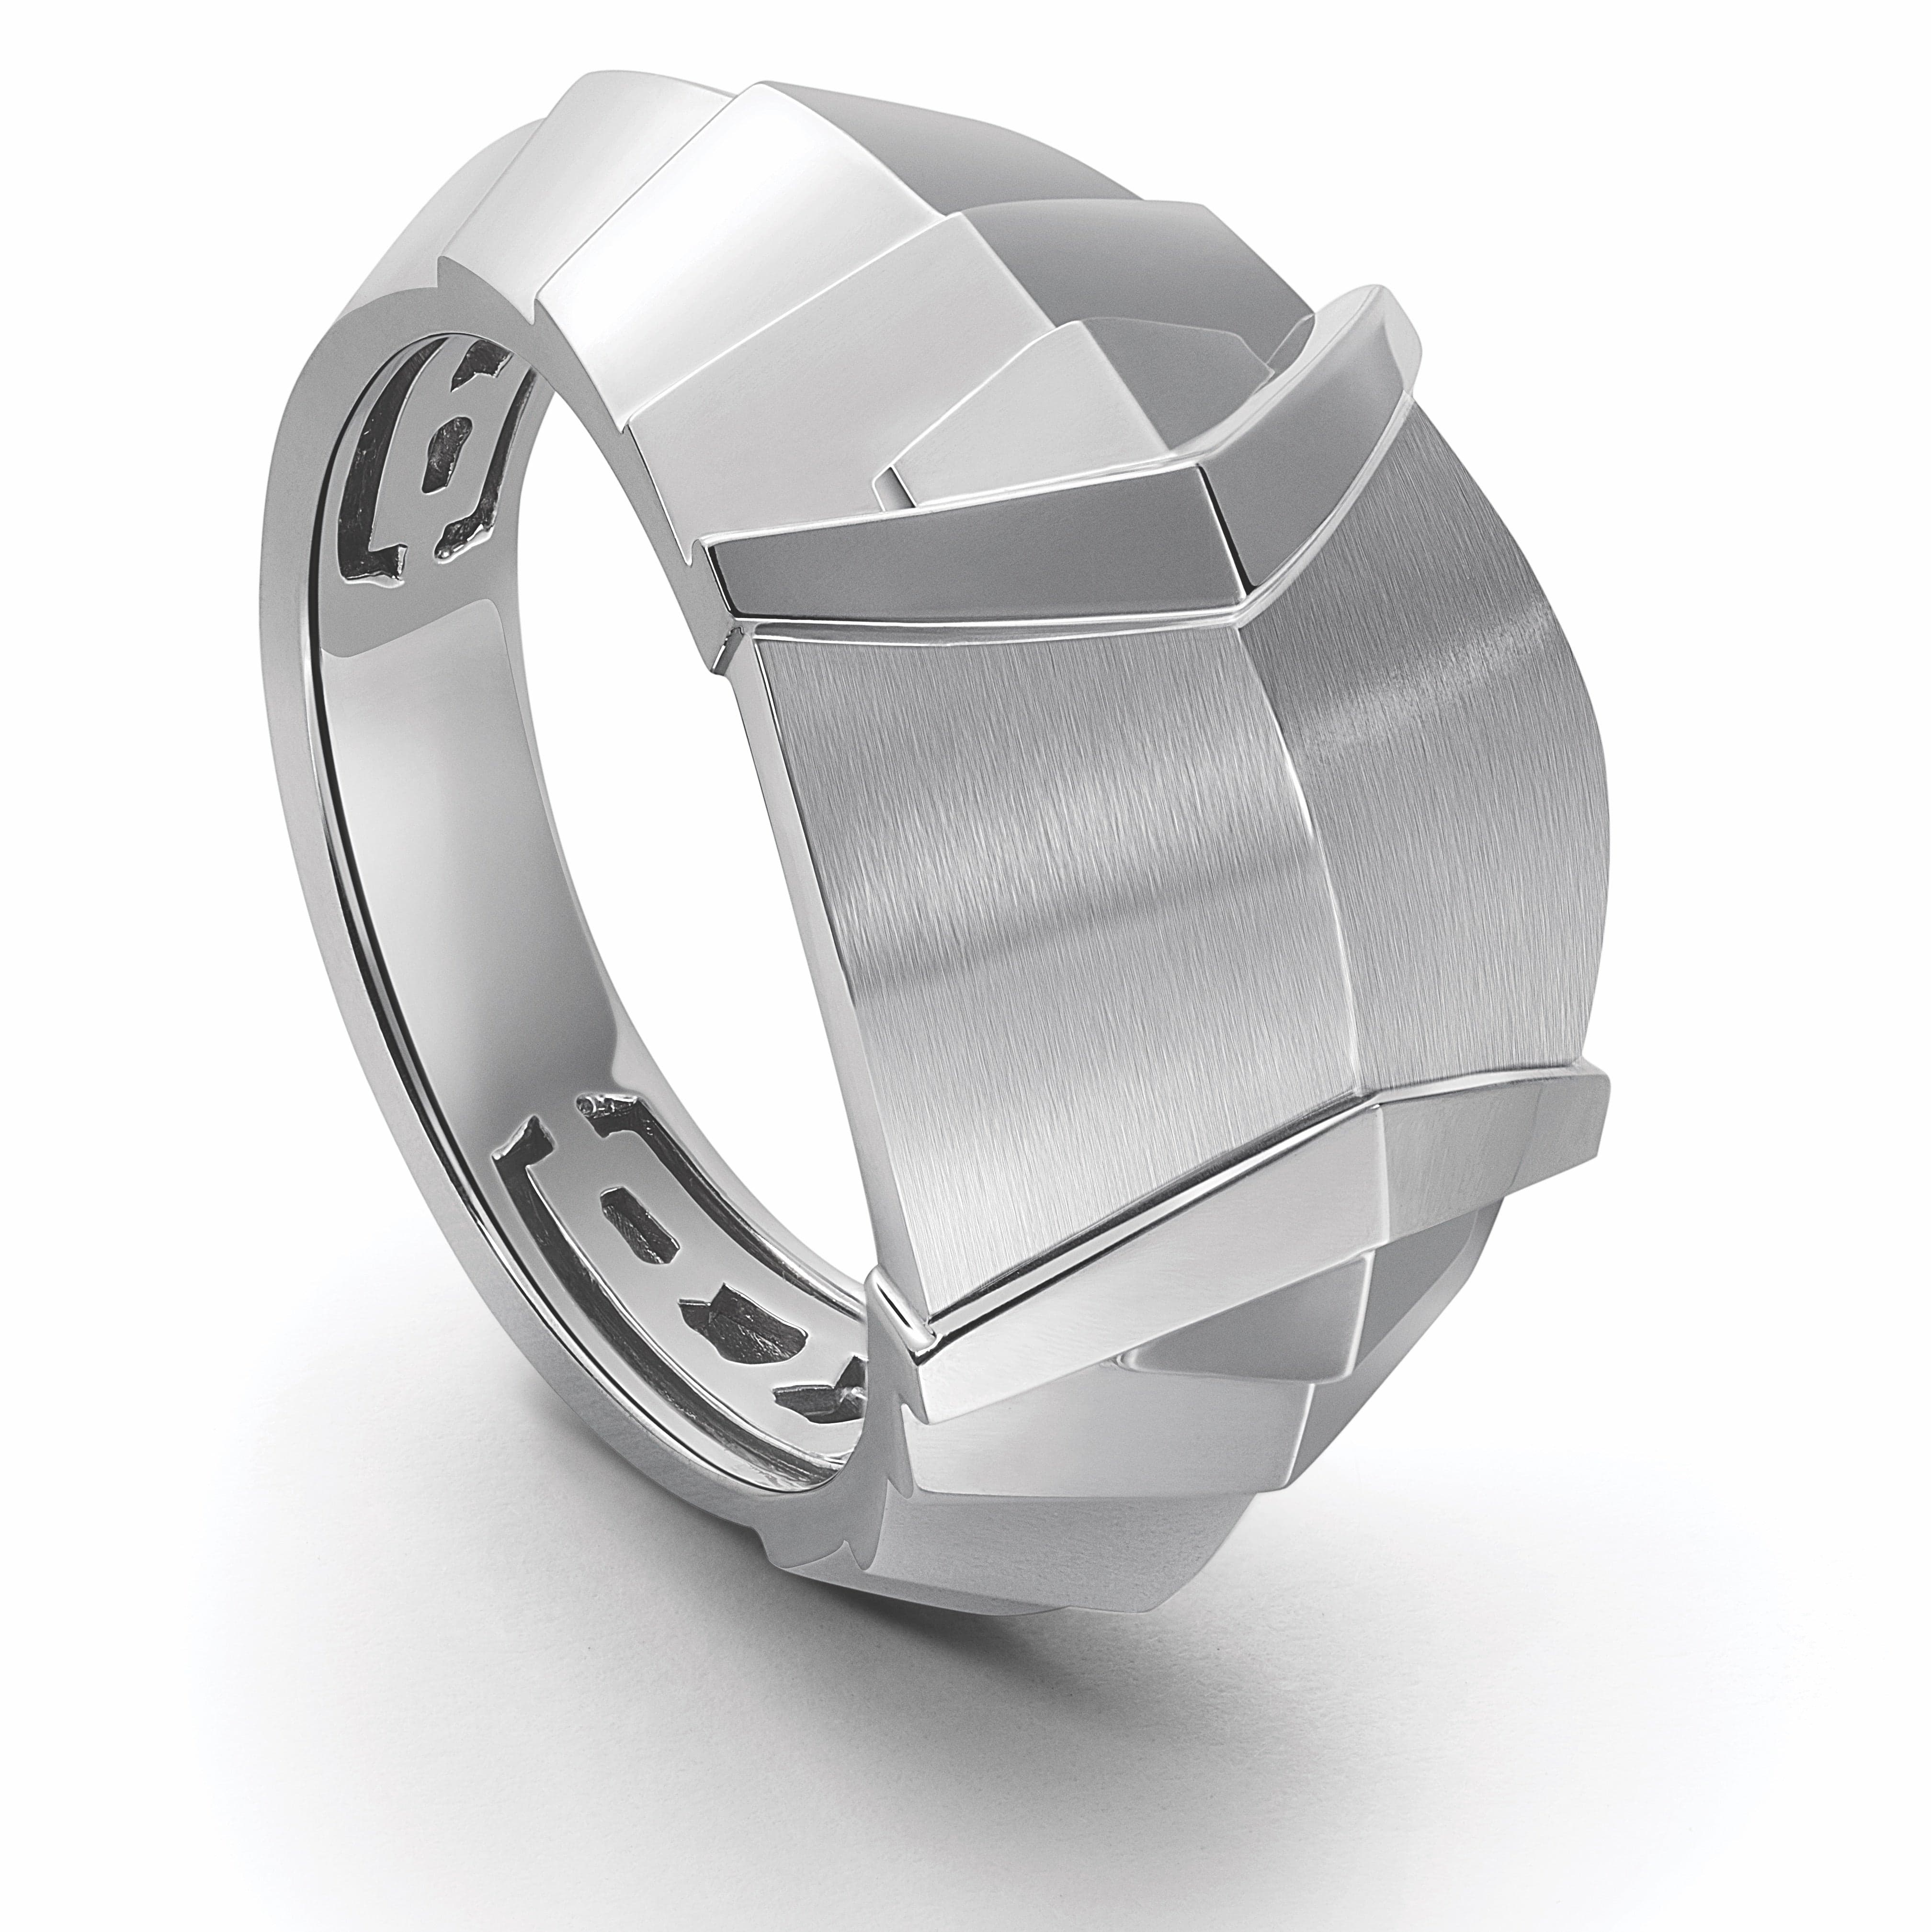 Shop Diego Platinum Ring for Men Online | CaratLane US